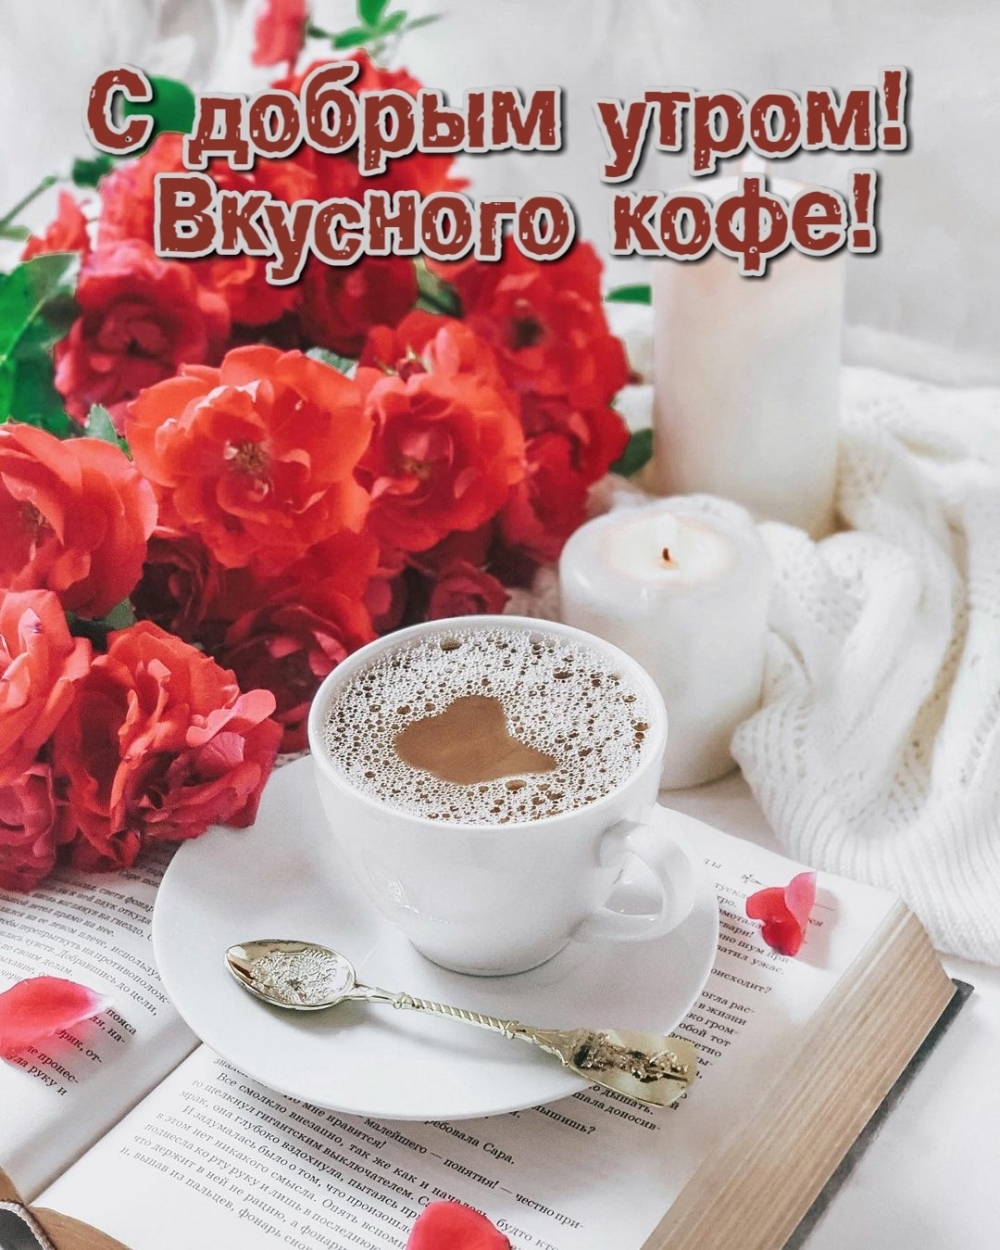 Пожелание доброго утра и вкусного кофе